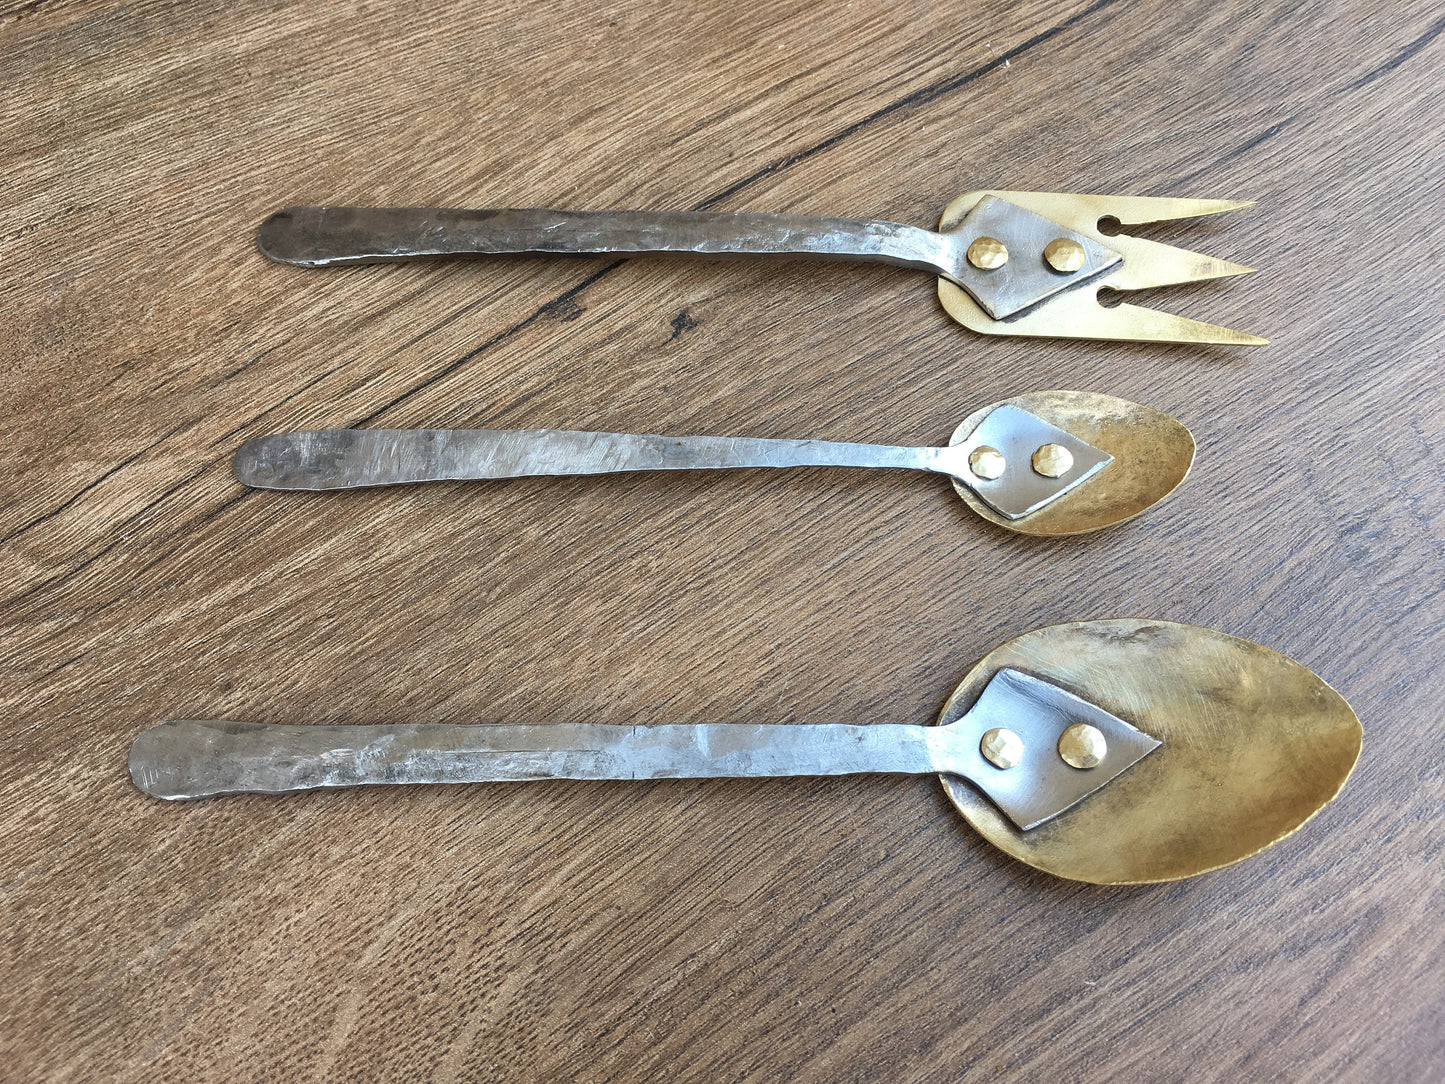 Bronze cutlery, mid century cutlery, midcentury flatware set, fork, cutlery, mid century flatware, medieval fork,mid century spoon,tea spoon